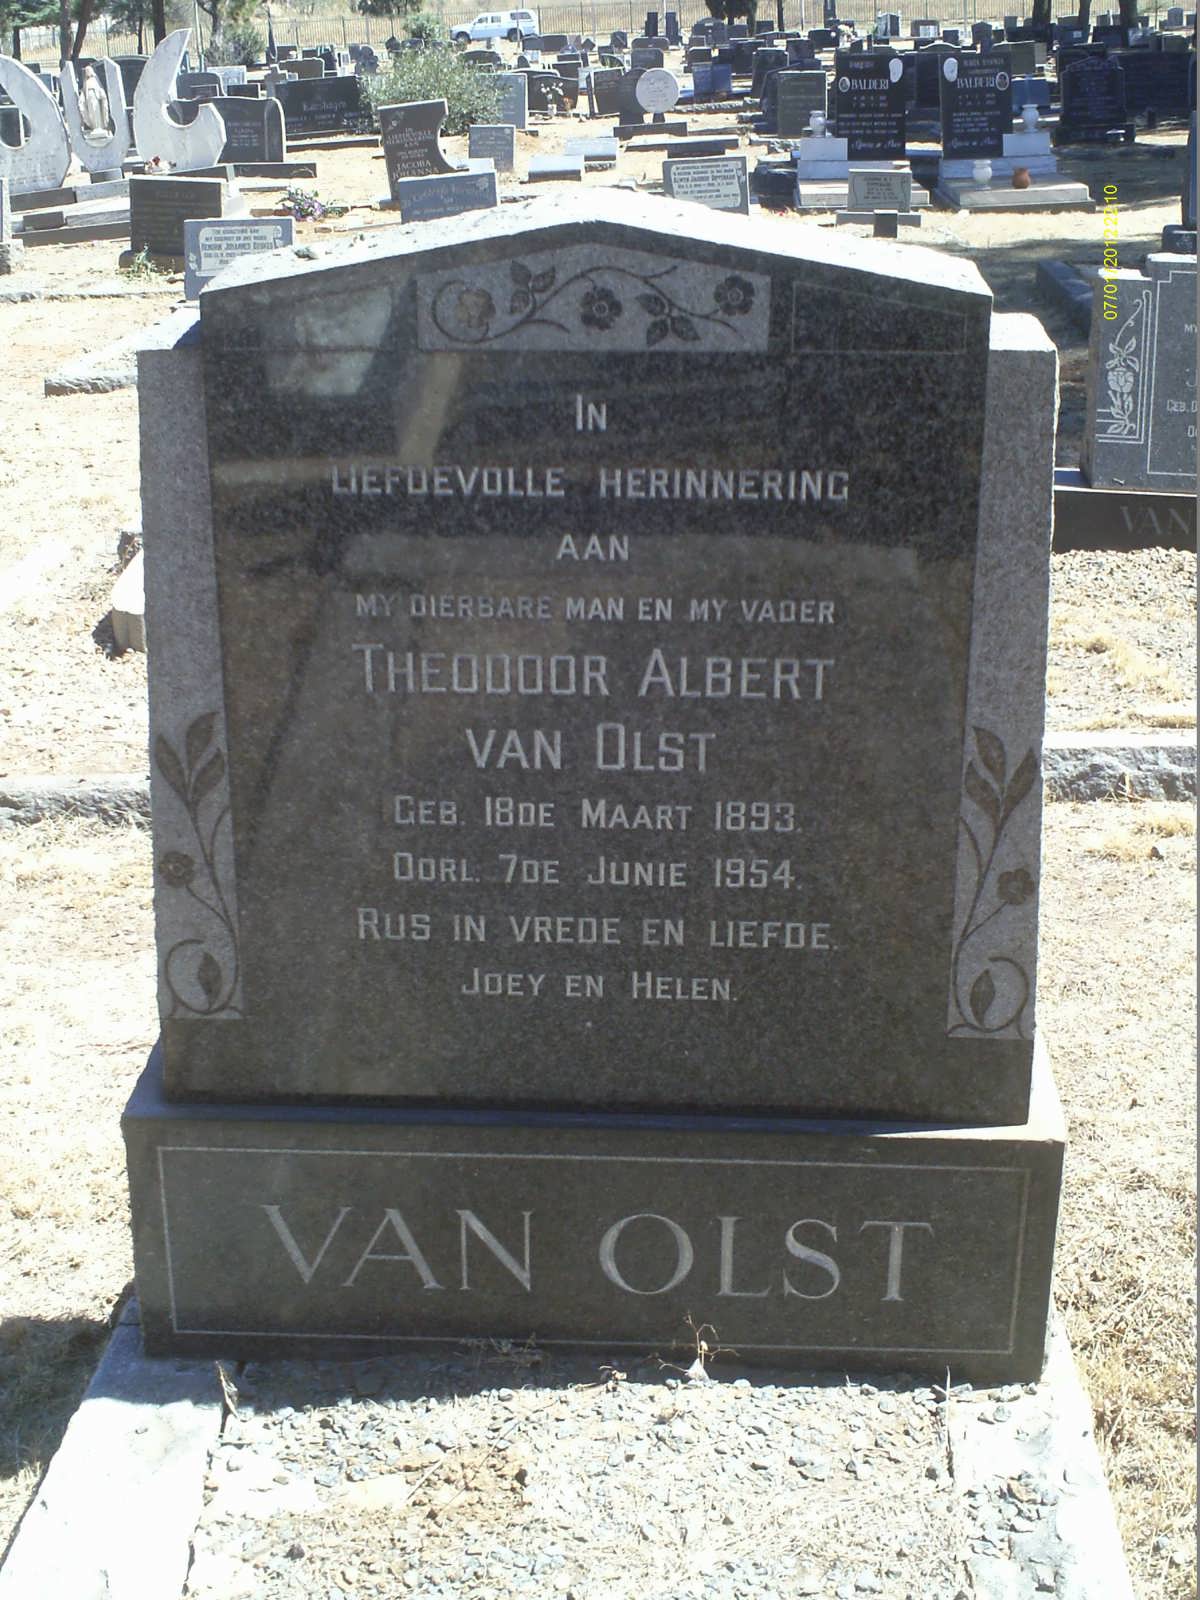 OLST Theodoor Albert, van 1893-1954